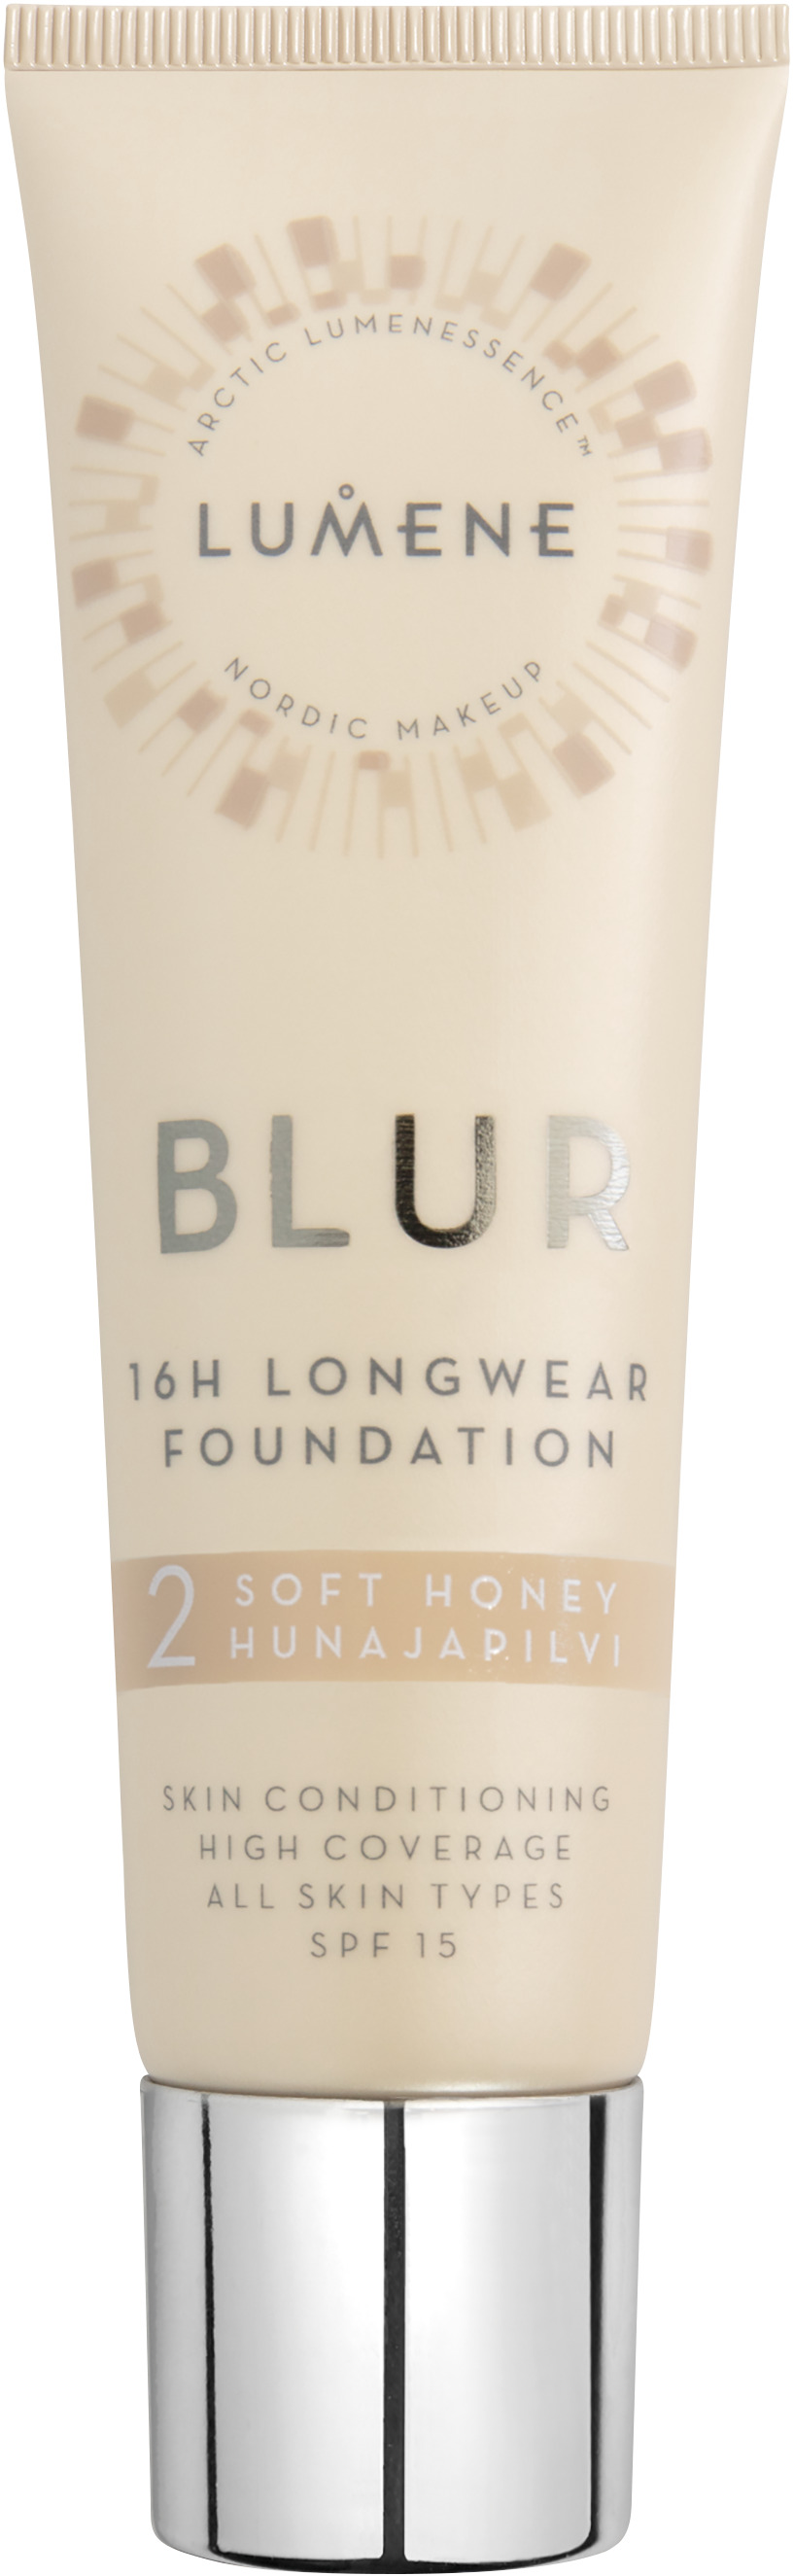 Lumene Blur 16h Longwear Foundation 2 30 ml